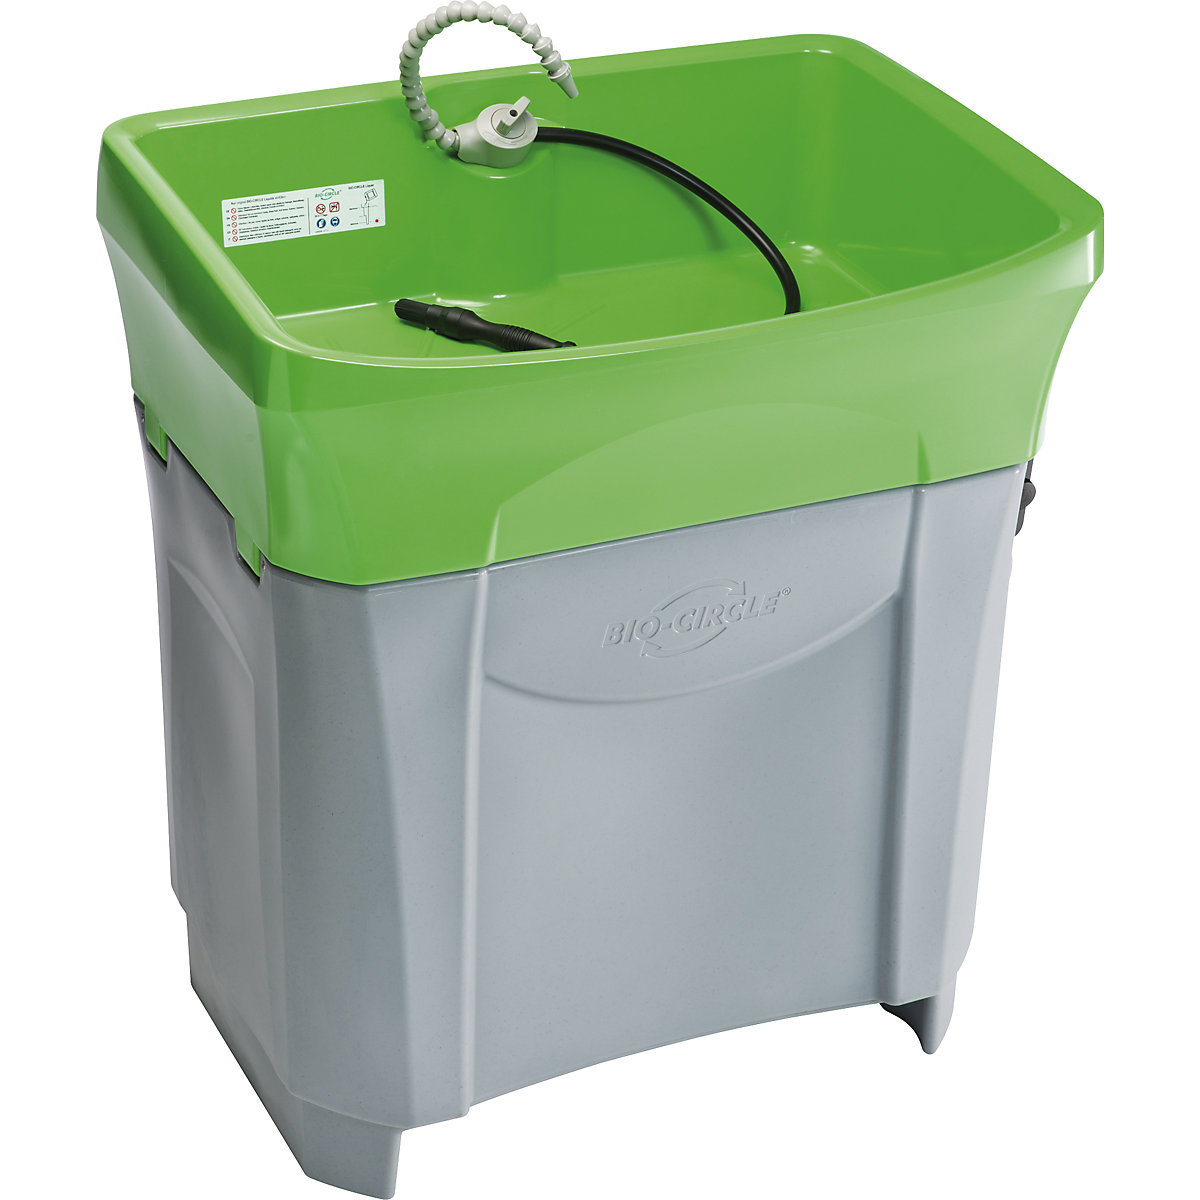 Naprava za pranje delov GT Maxi – Bio-Circle, za sod prostornine 100 l, nosilnost 250 kg